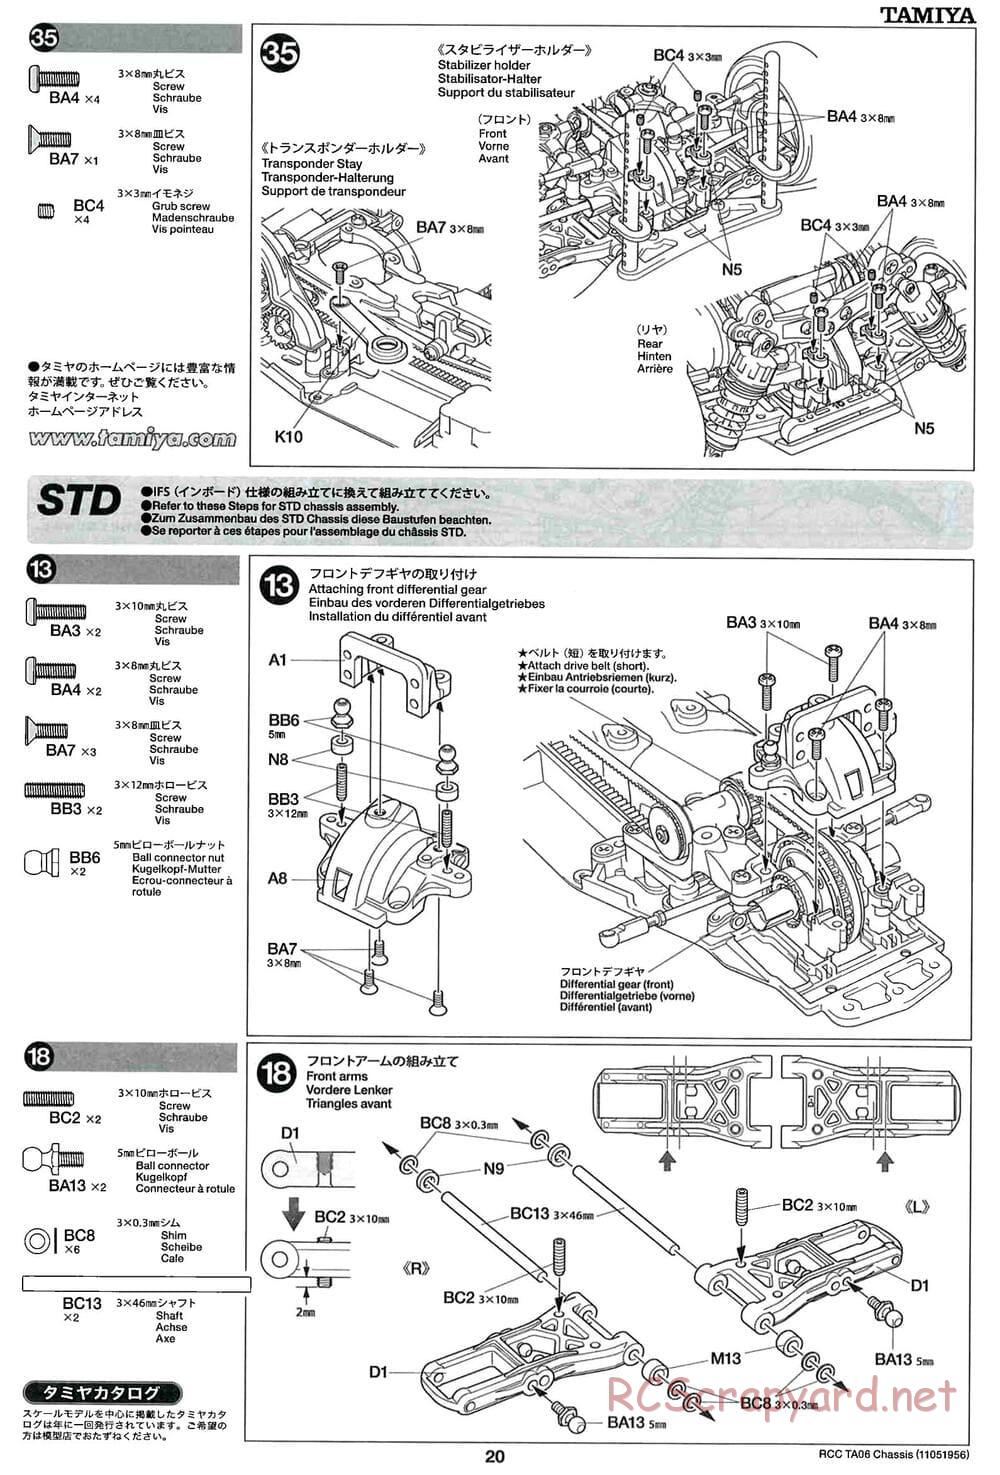 Tamiya - TA06 Chassis - Manual - Page 20